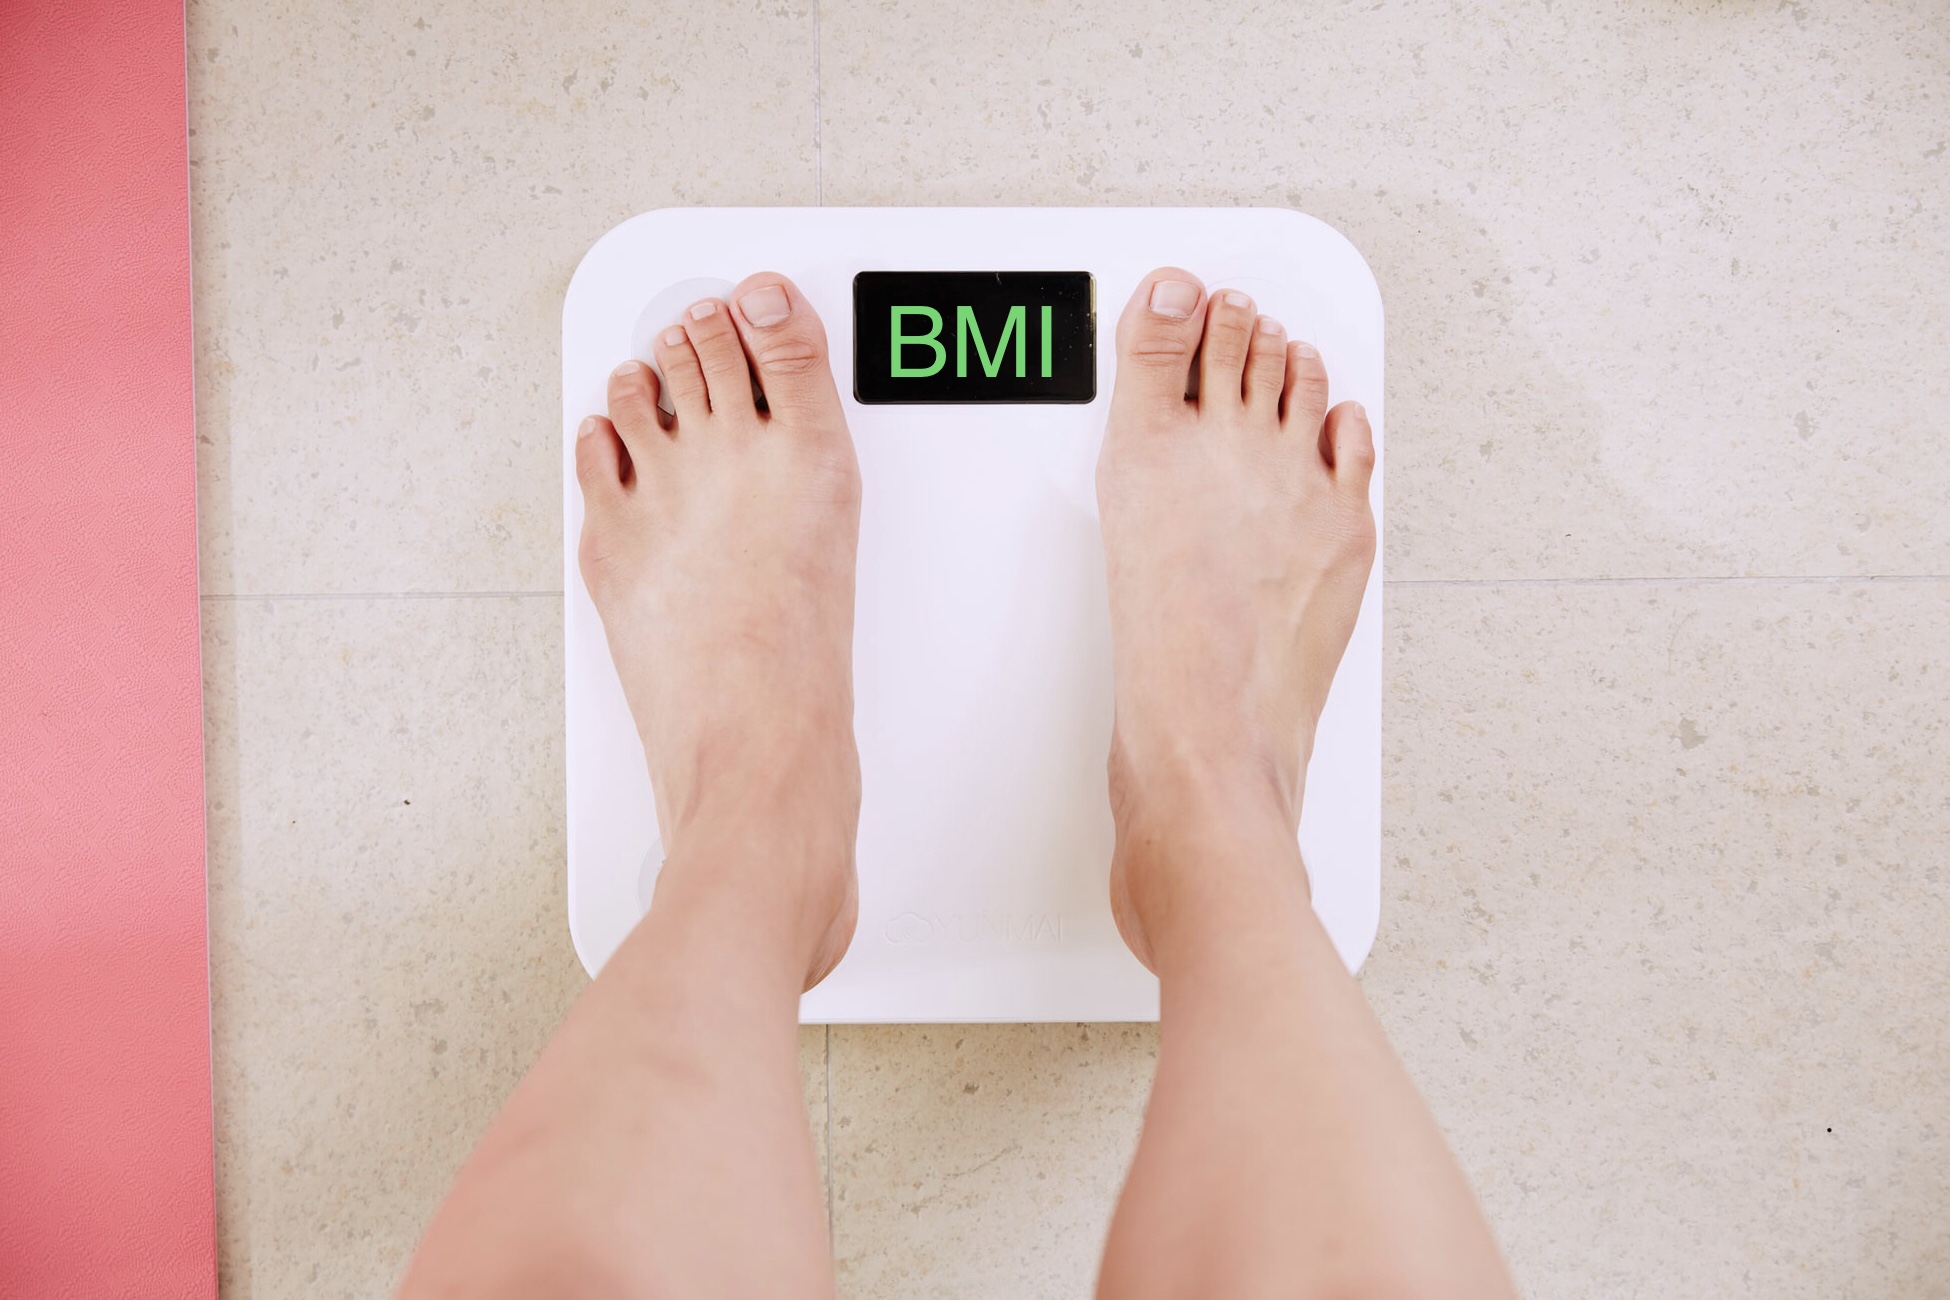 El peso corporal saludable se define como un índice de masa corporal (IMC) normal, que se sitúa entre 18,5 y 24,9.